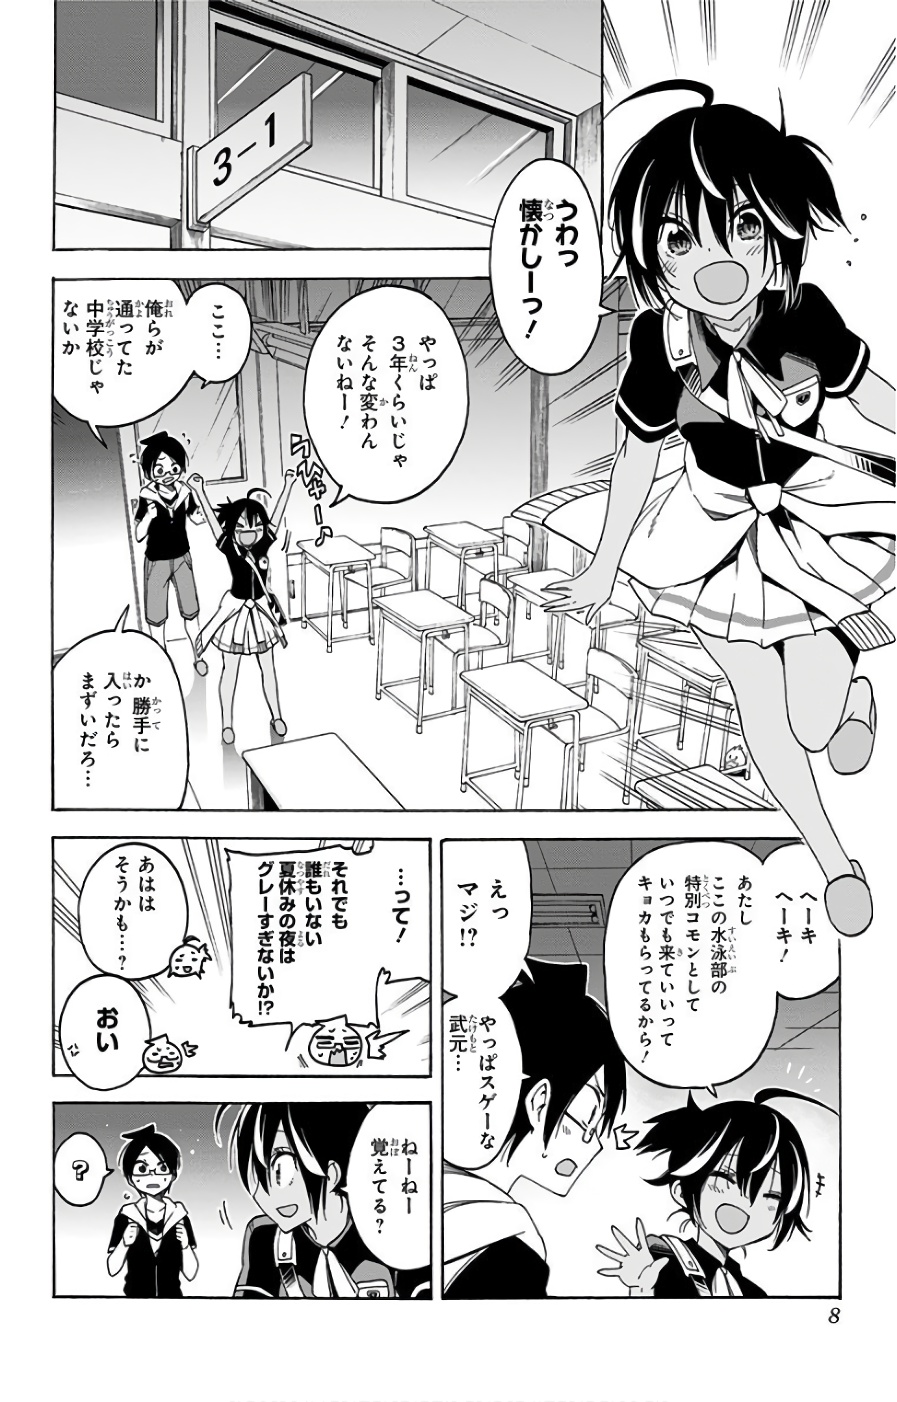 Bokutachi wa Benkyou ga Dekinai - Chapter 43 - Page 2